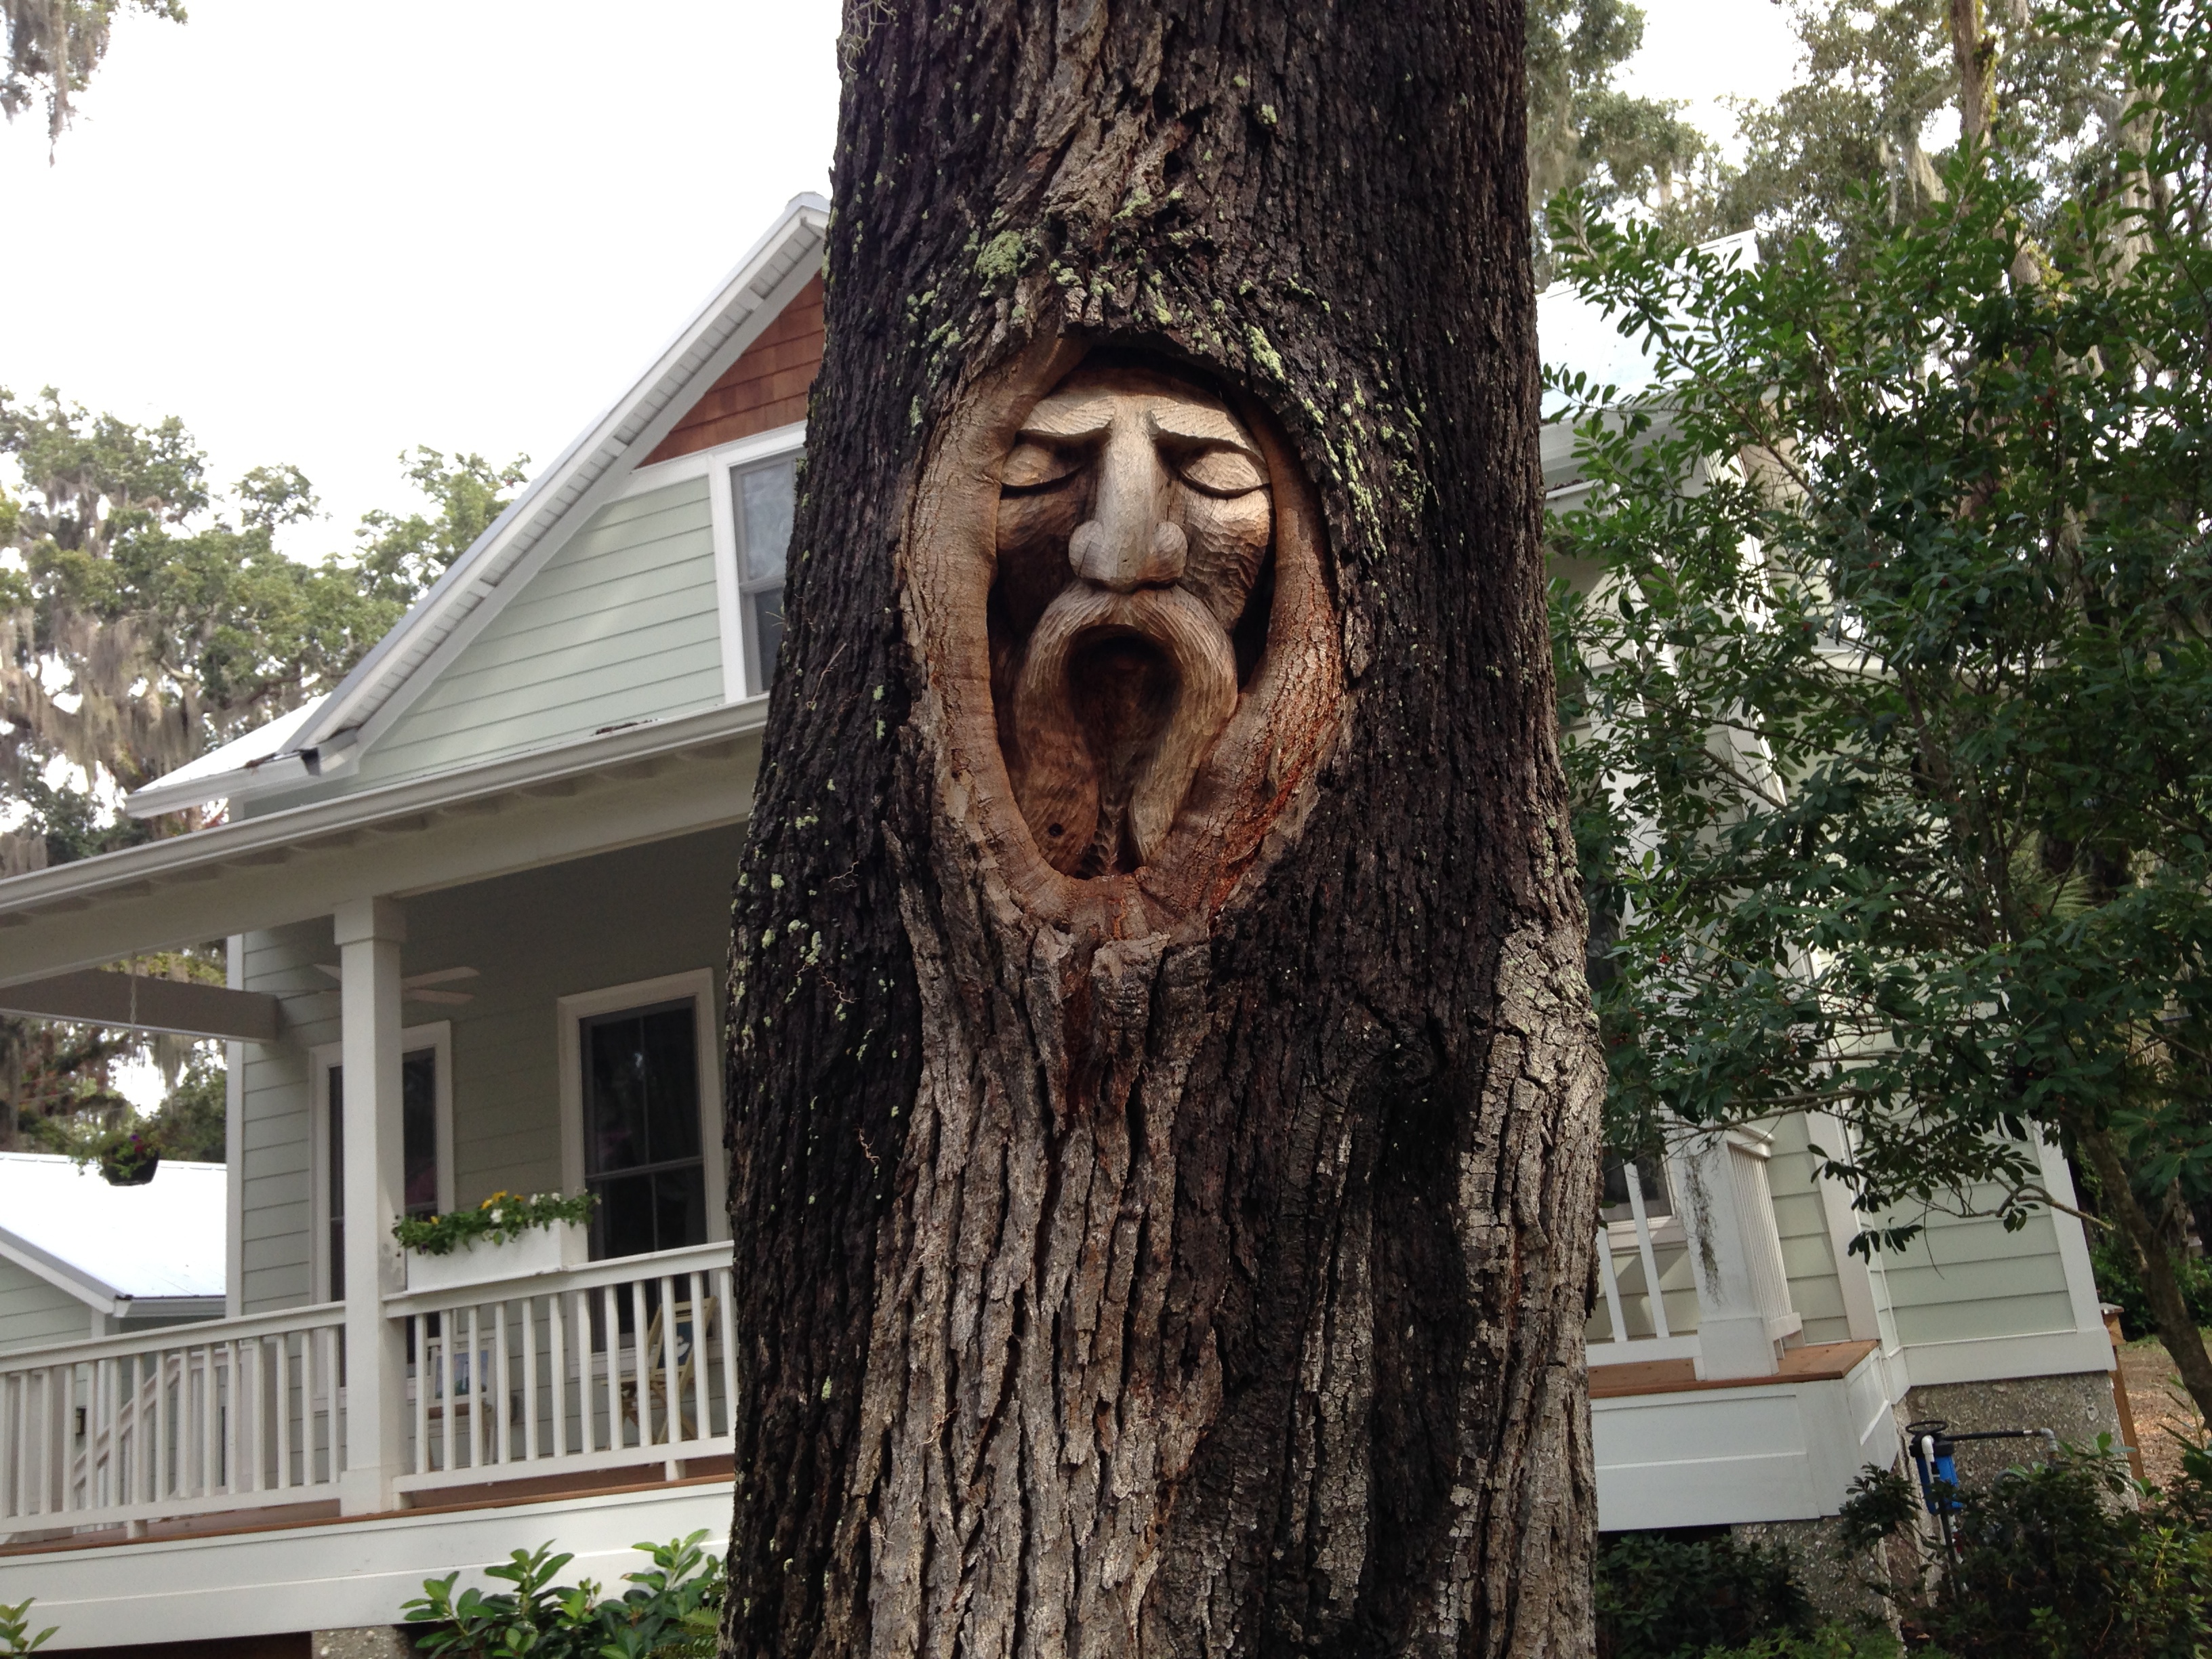 Spirit faces in trees